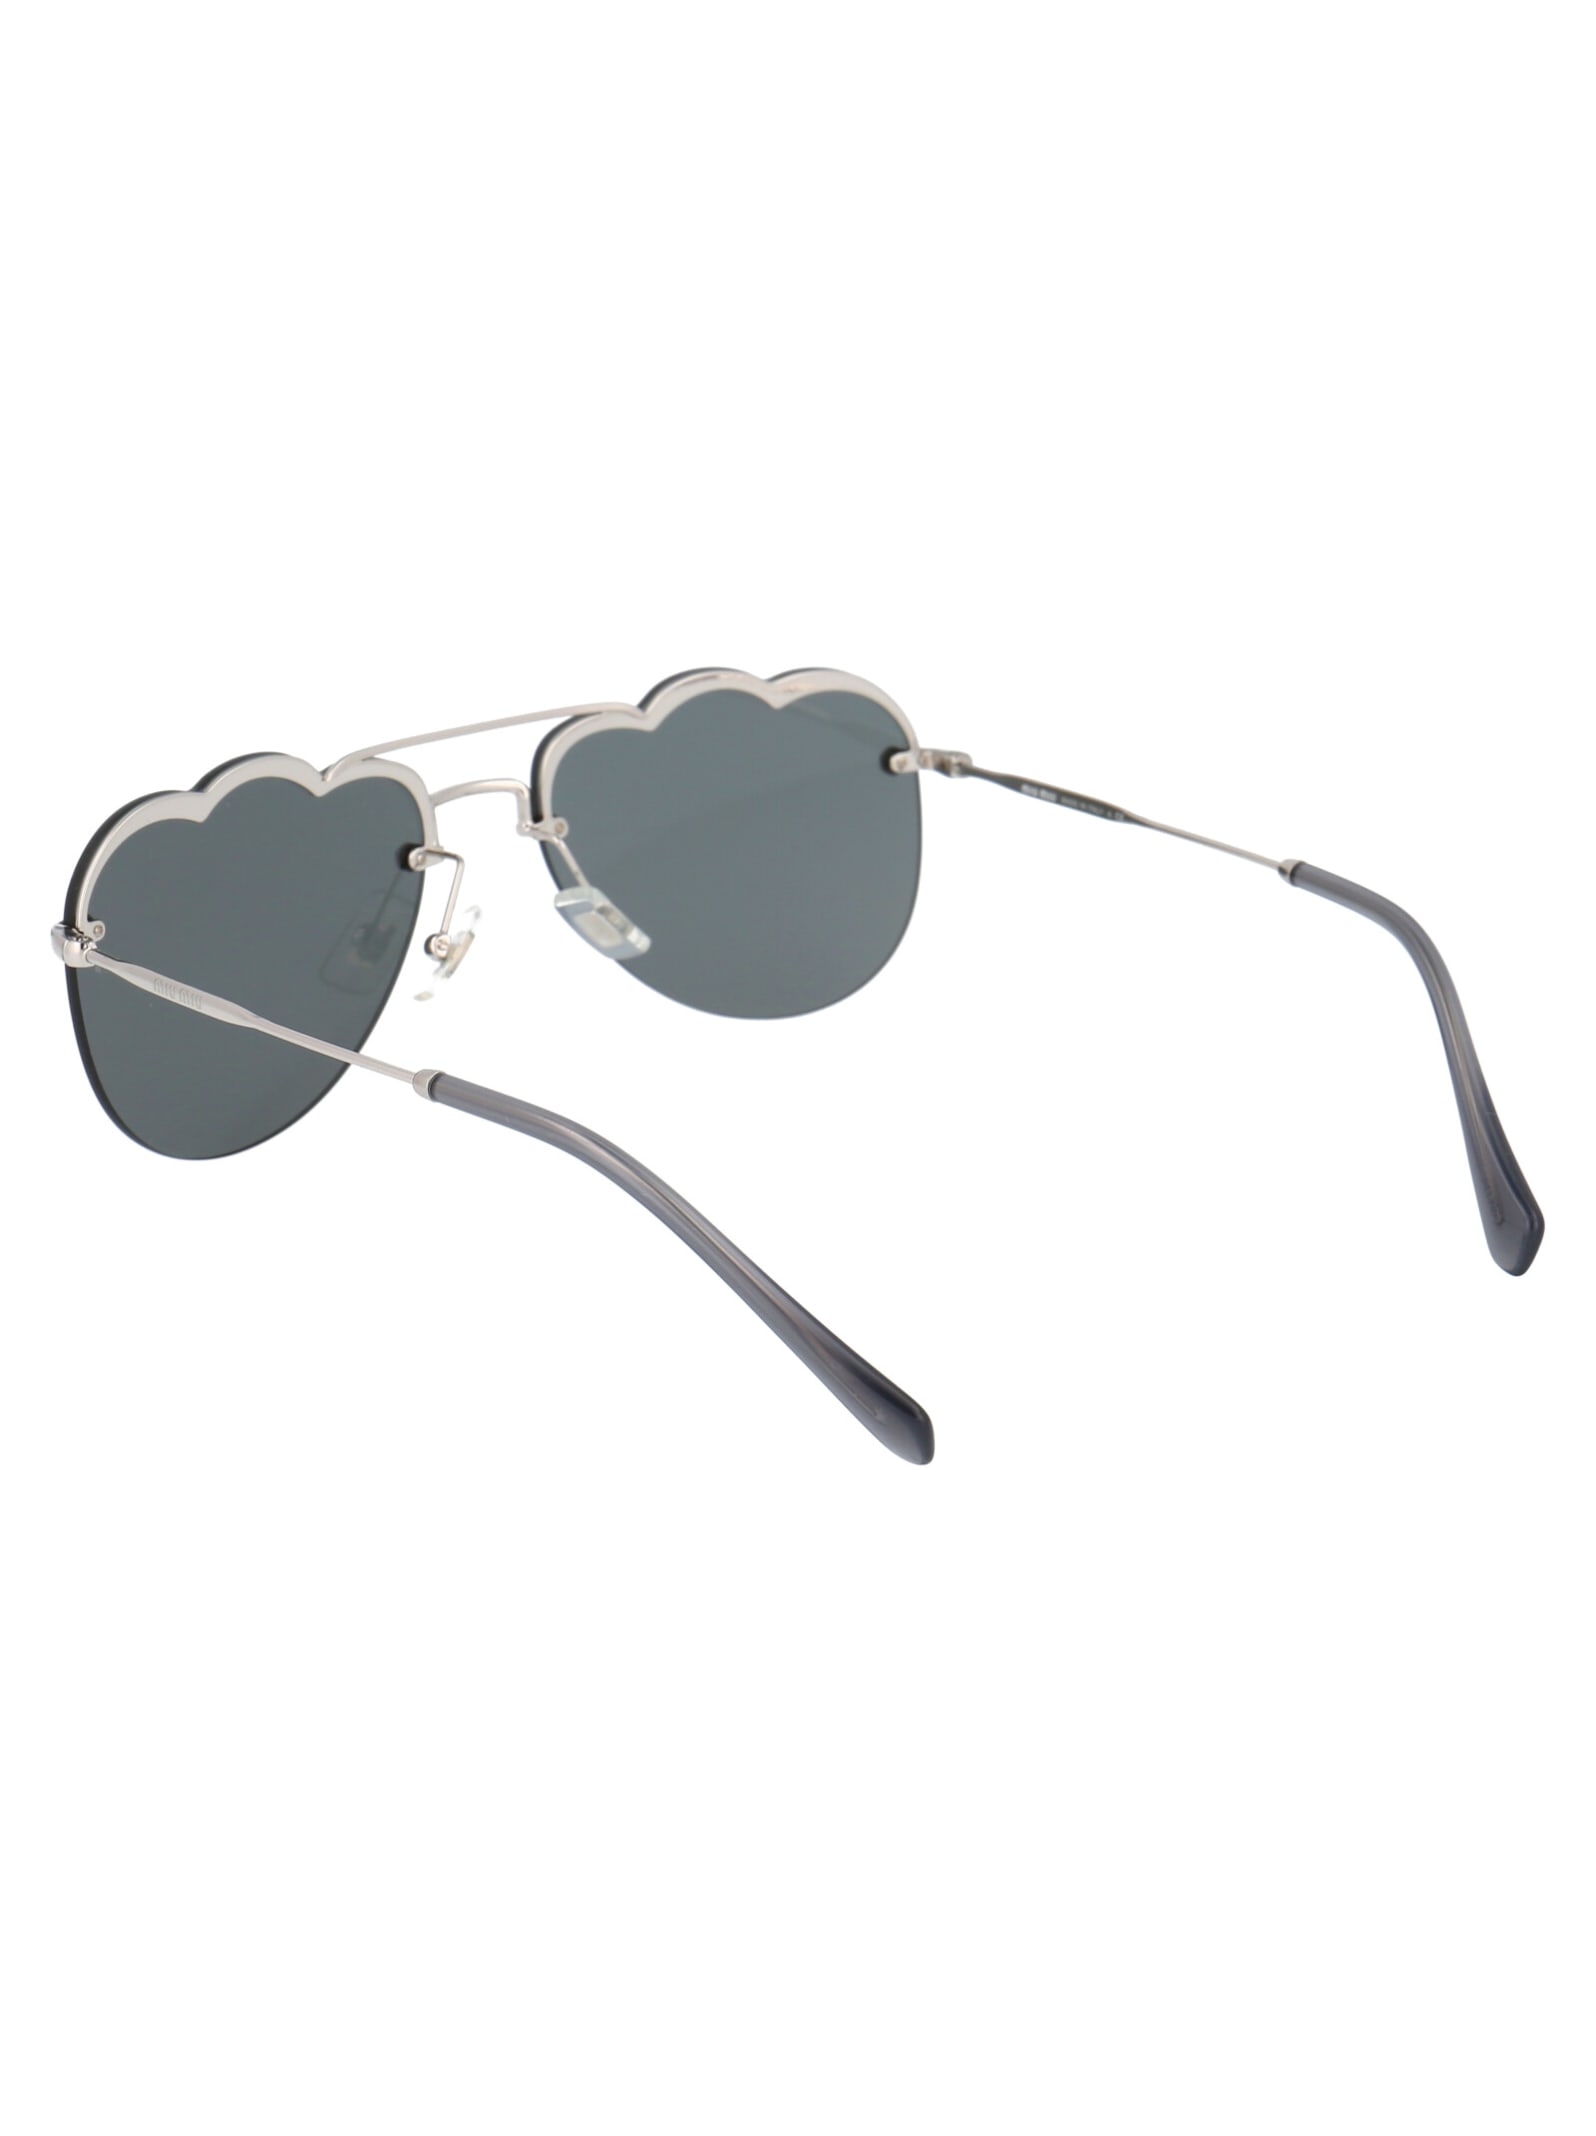 Shop Miu Miu 0mu 56us Sunglasses In 1bc175 Silver